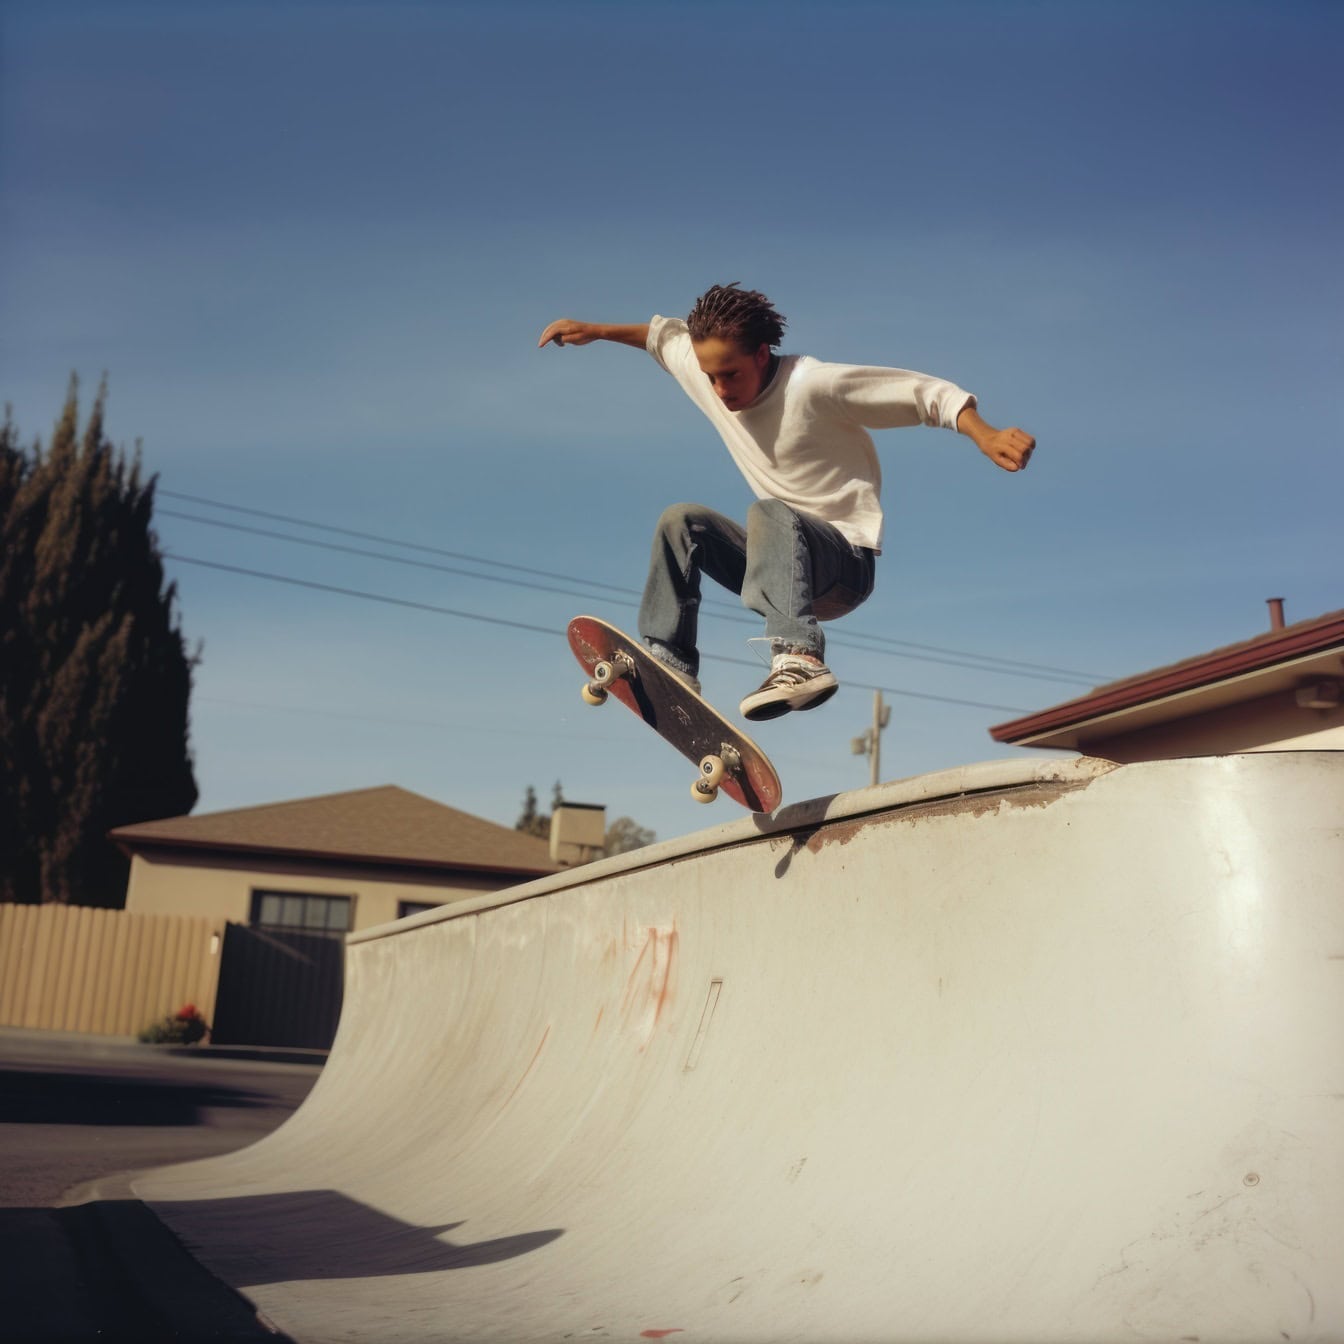 Подросток с разбитым лицом прыгает со скейтбордом на скользящей рампе, пример неудачной фотографии, сгенерированной Ии